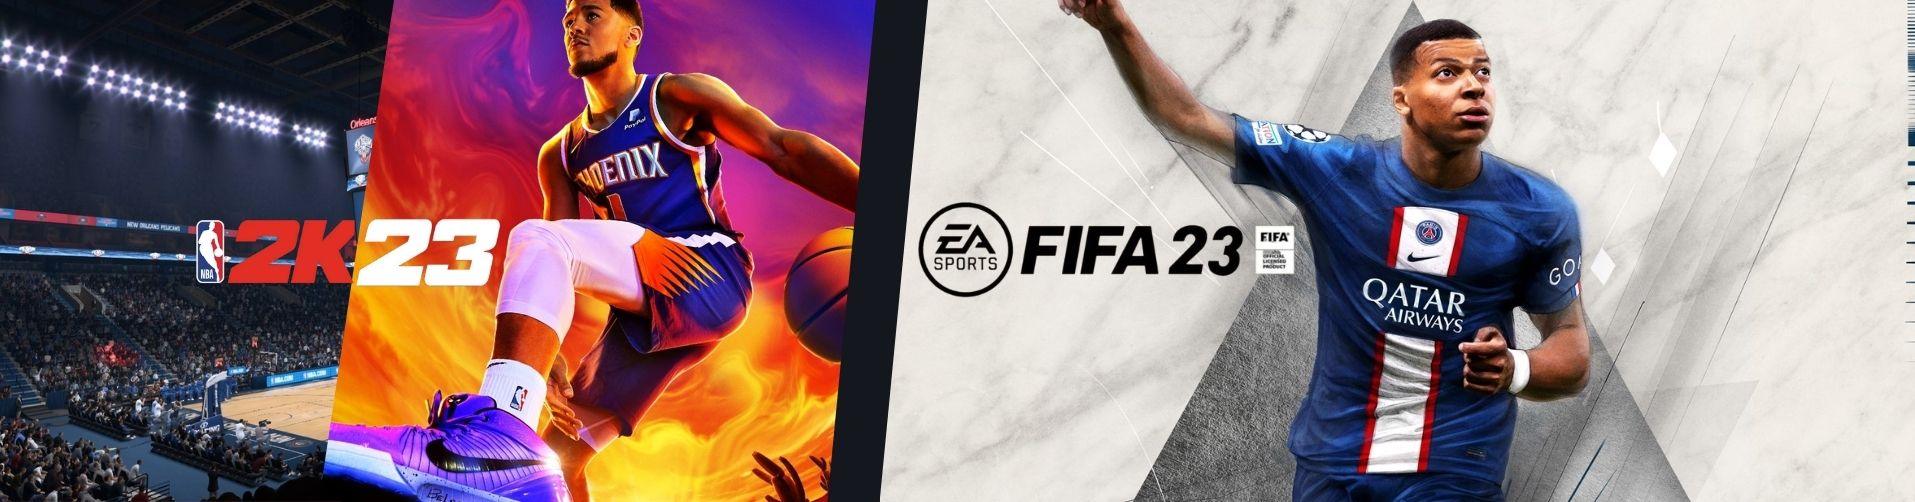 FIFA 23 | NBA 2K23 - EXON - גיימינג ותוכנות - משחקים ותוכנות למחשב ולאקס בוקס!